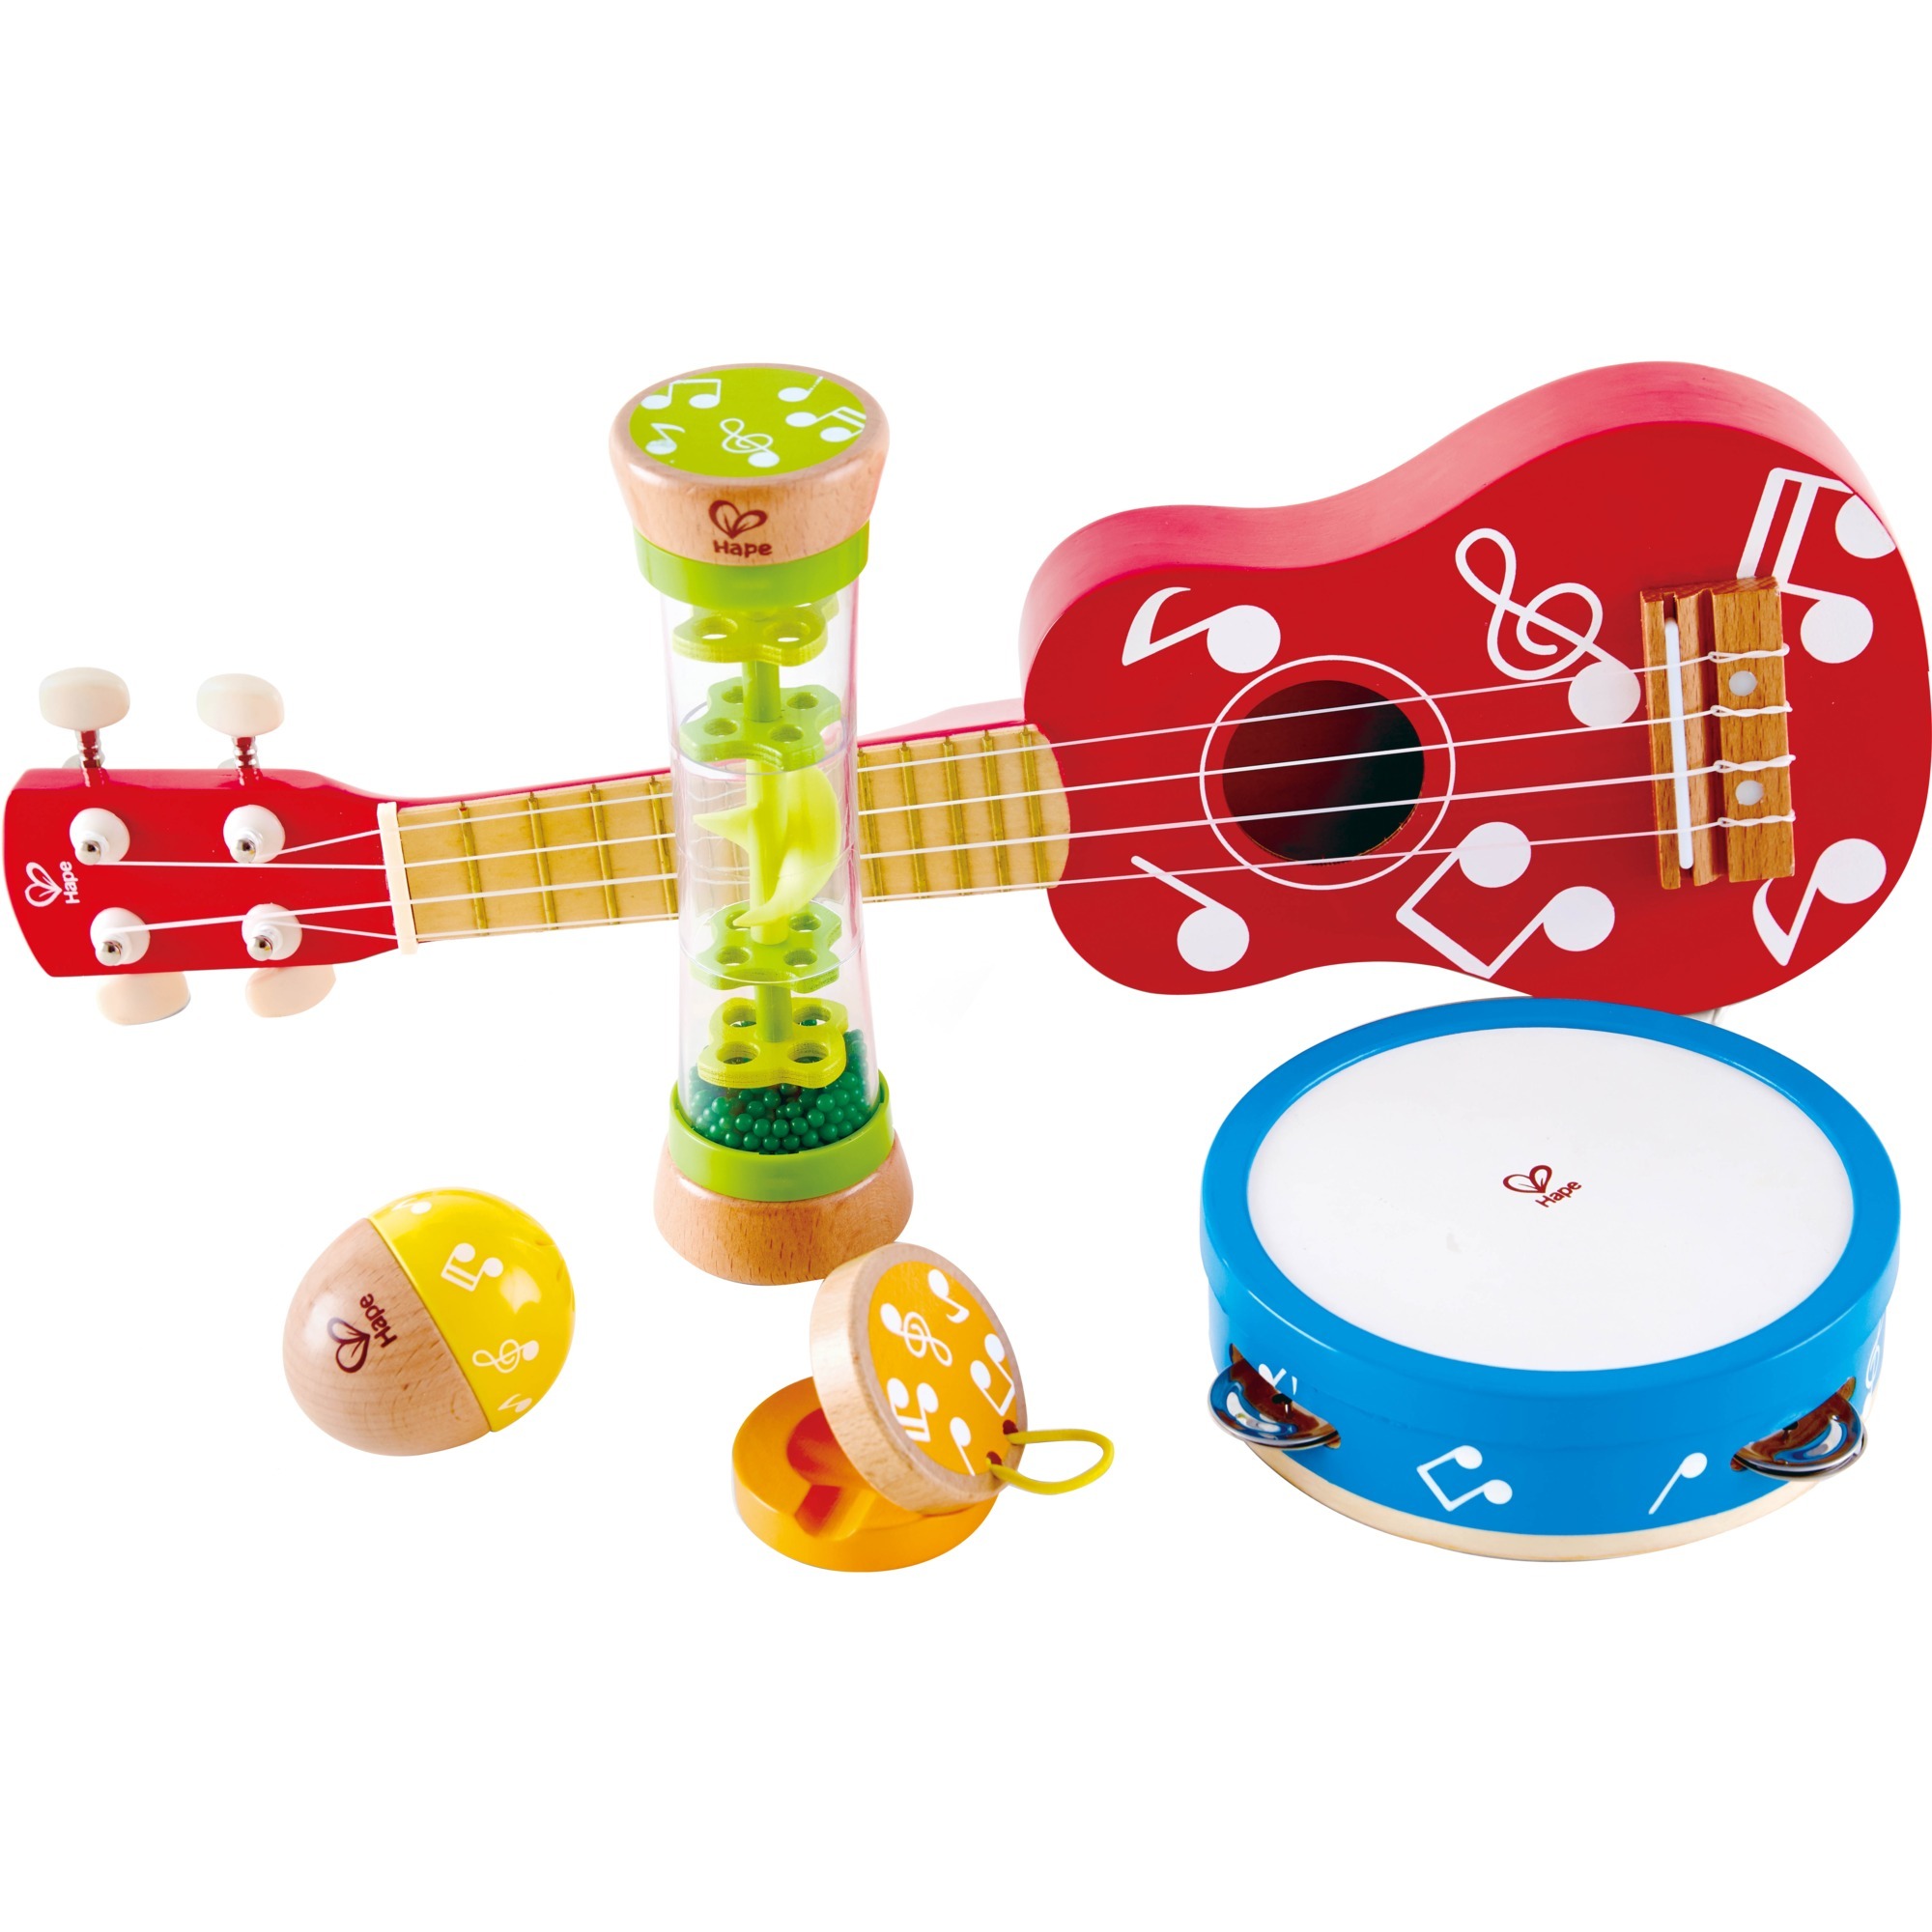 Image of Alternate - Mini-Band Set, Musikspielzeug online einkaufen bei Alternate